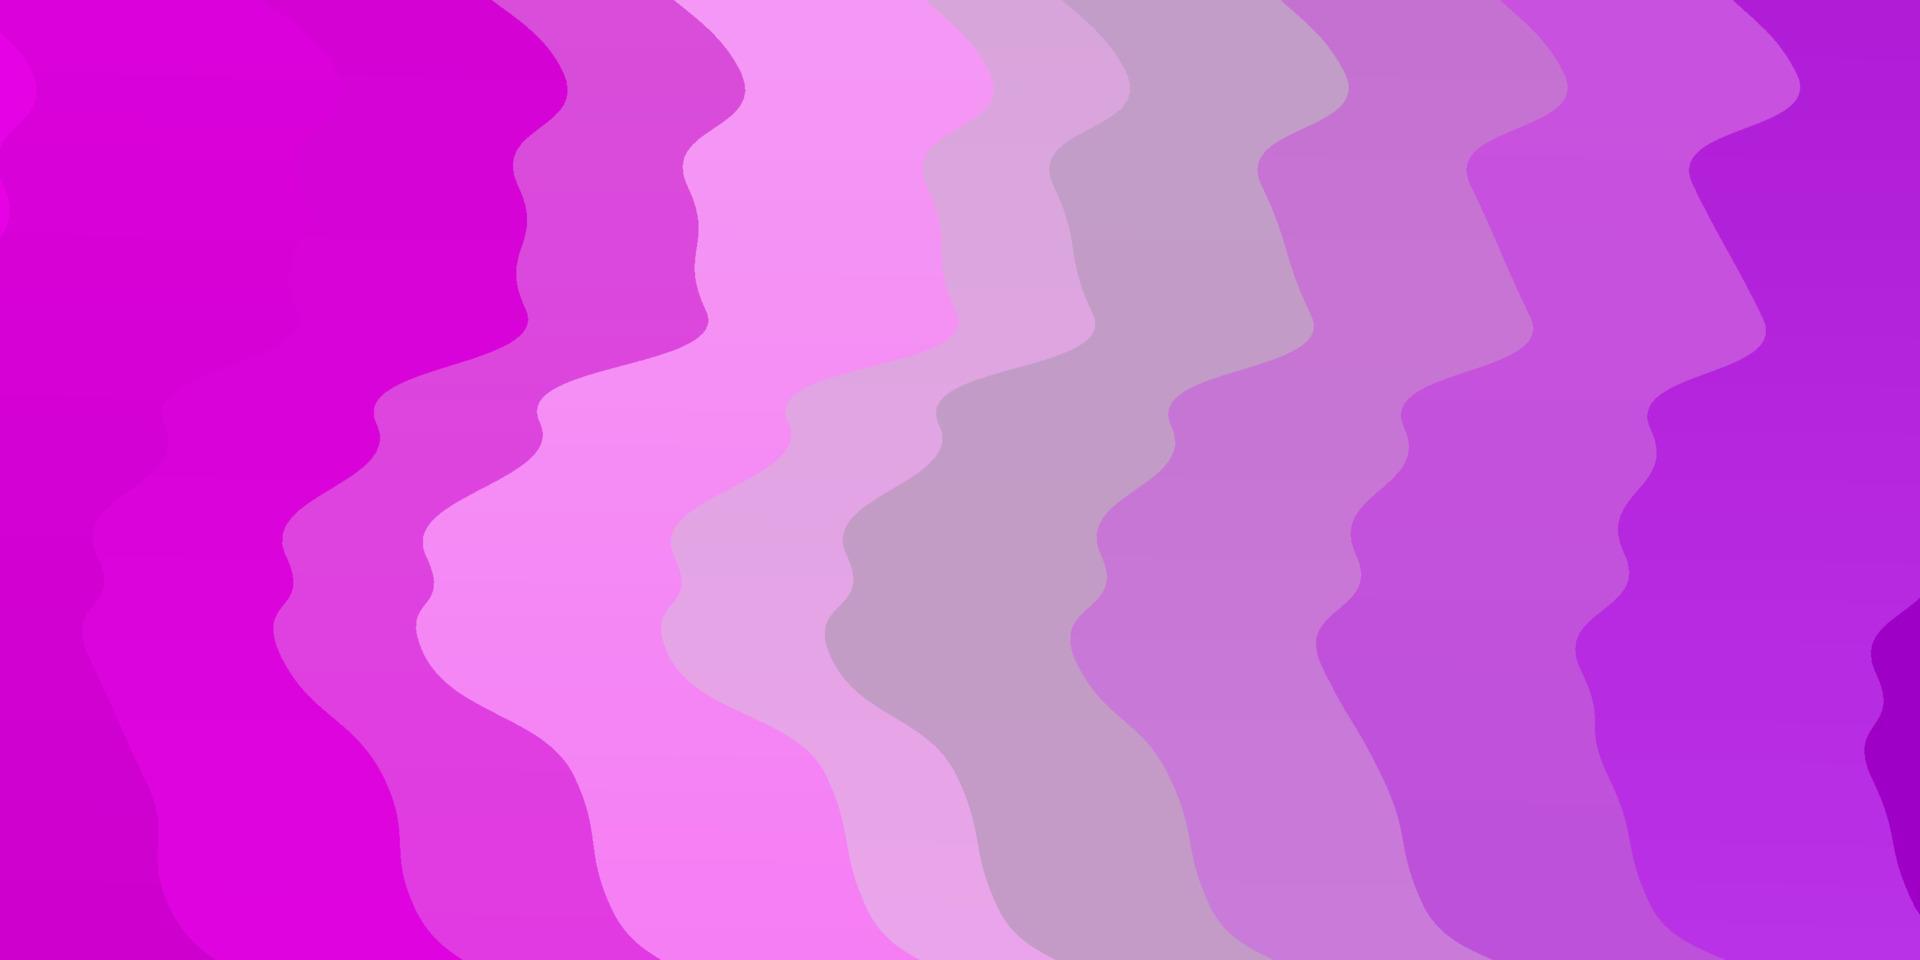 sfondo vettoriale viola chiaro, rosa con curve.